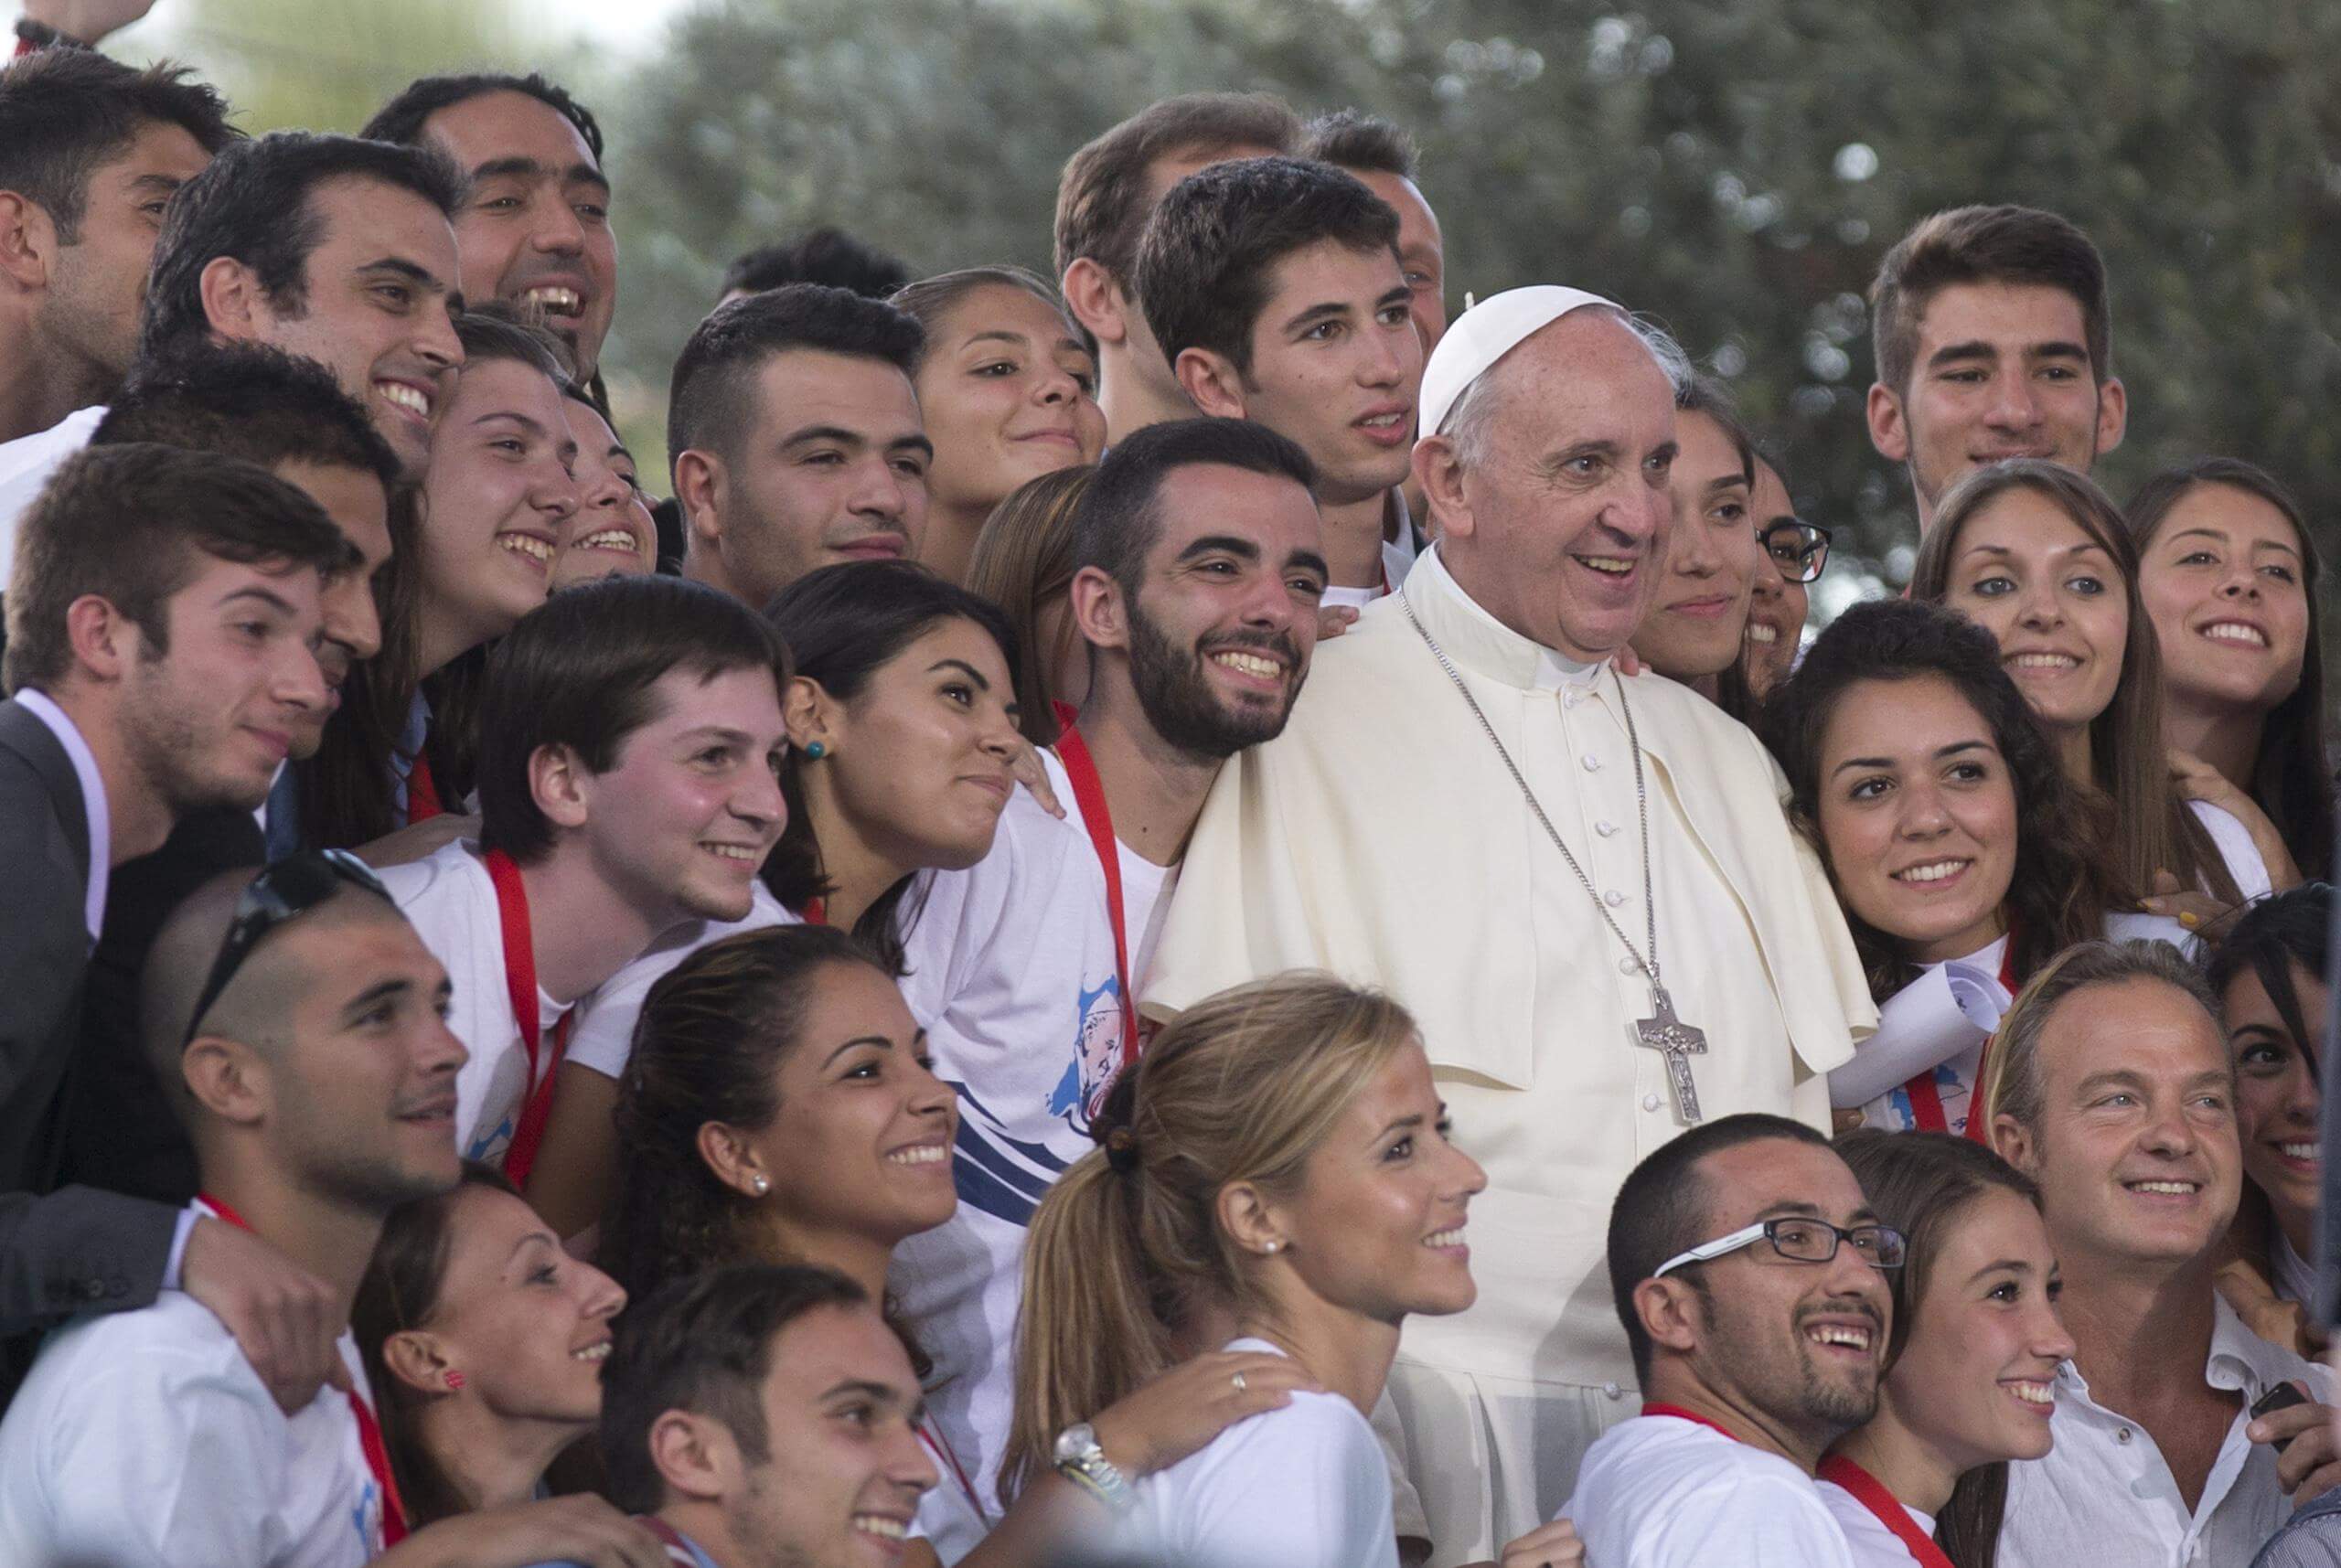 Carta del Papa Francisco a los jóvenes